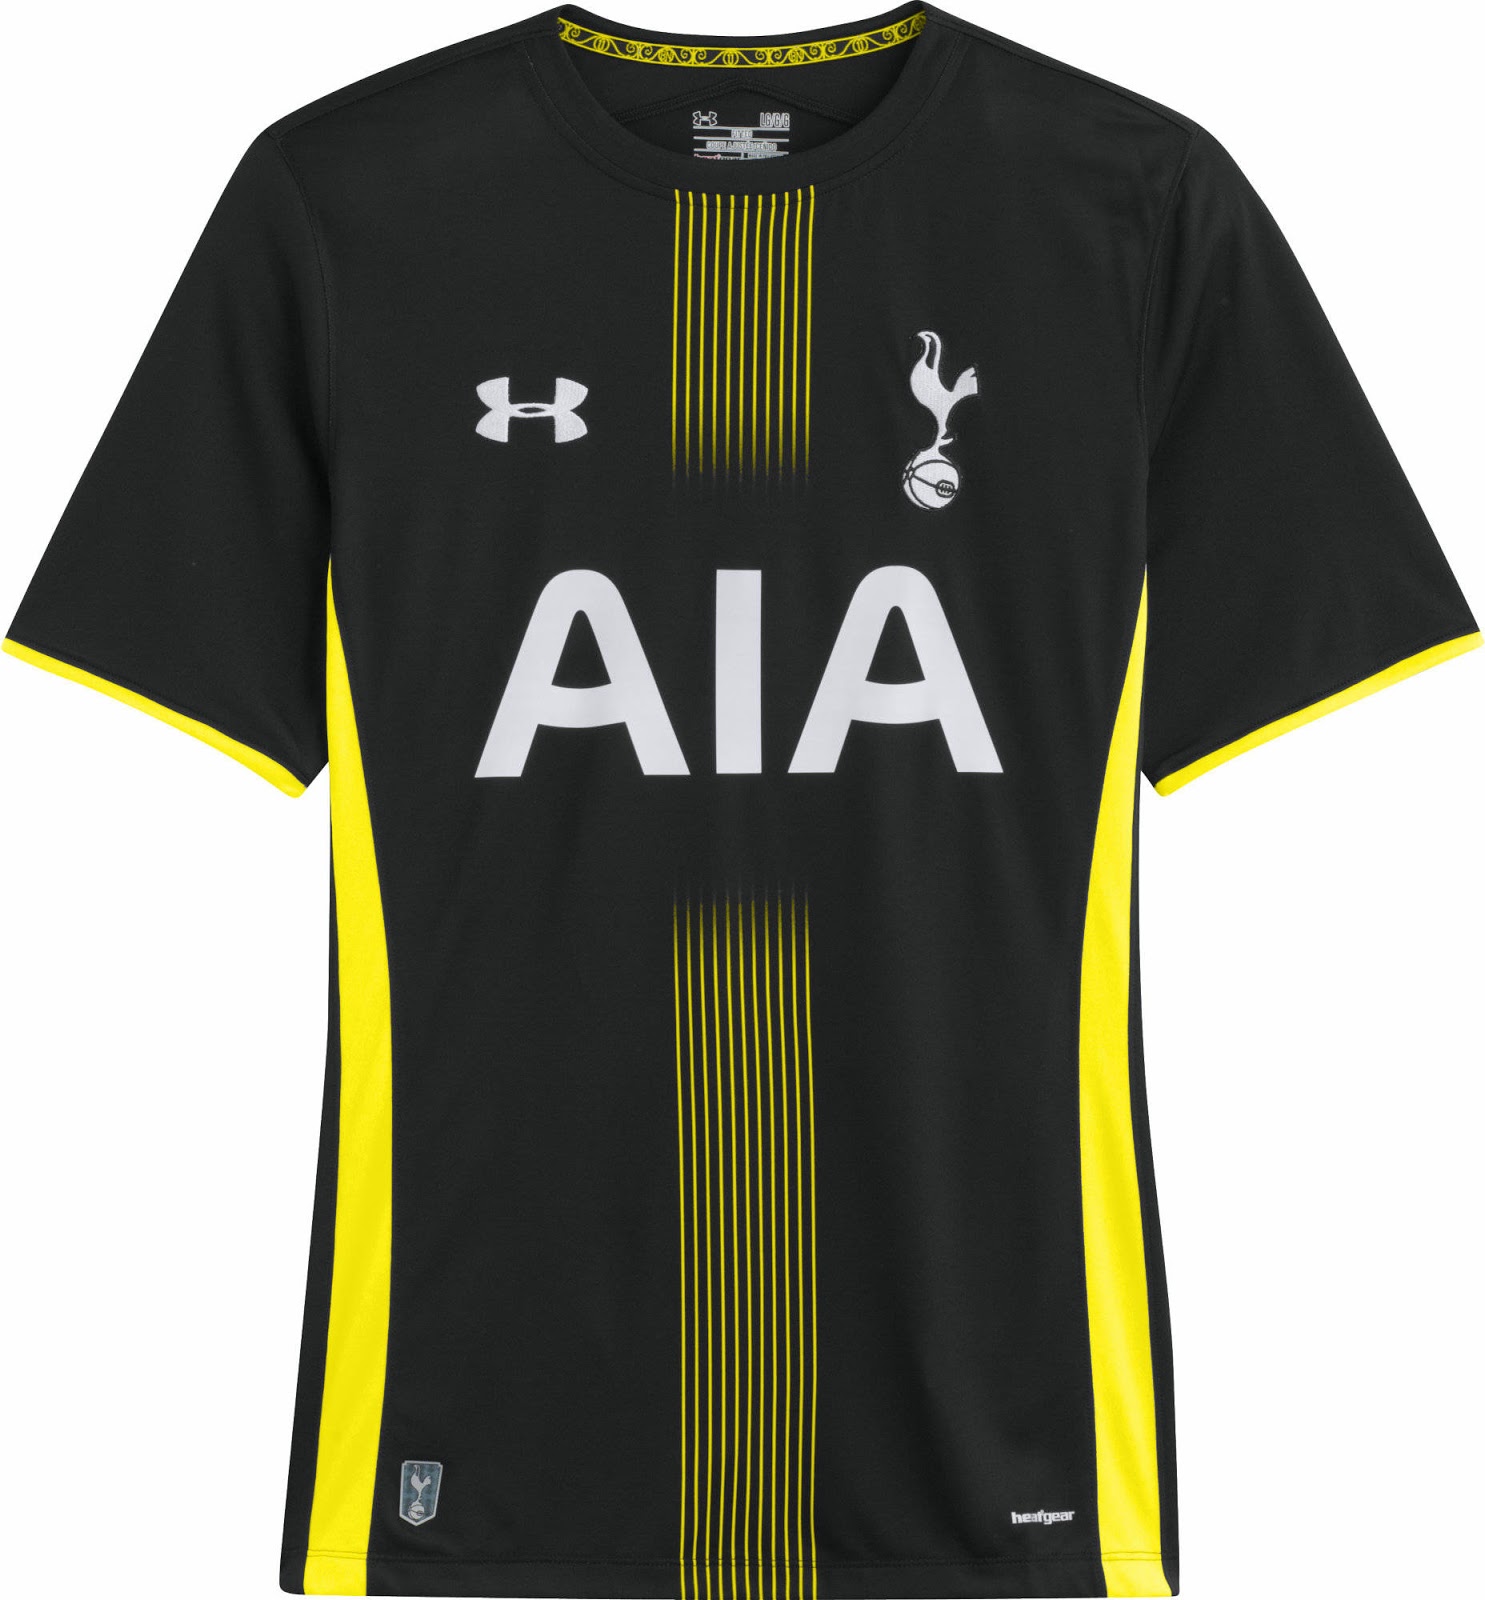 Tottenham Hotspur 2014/15 kits: Club unveil new Bill Nicholson